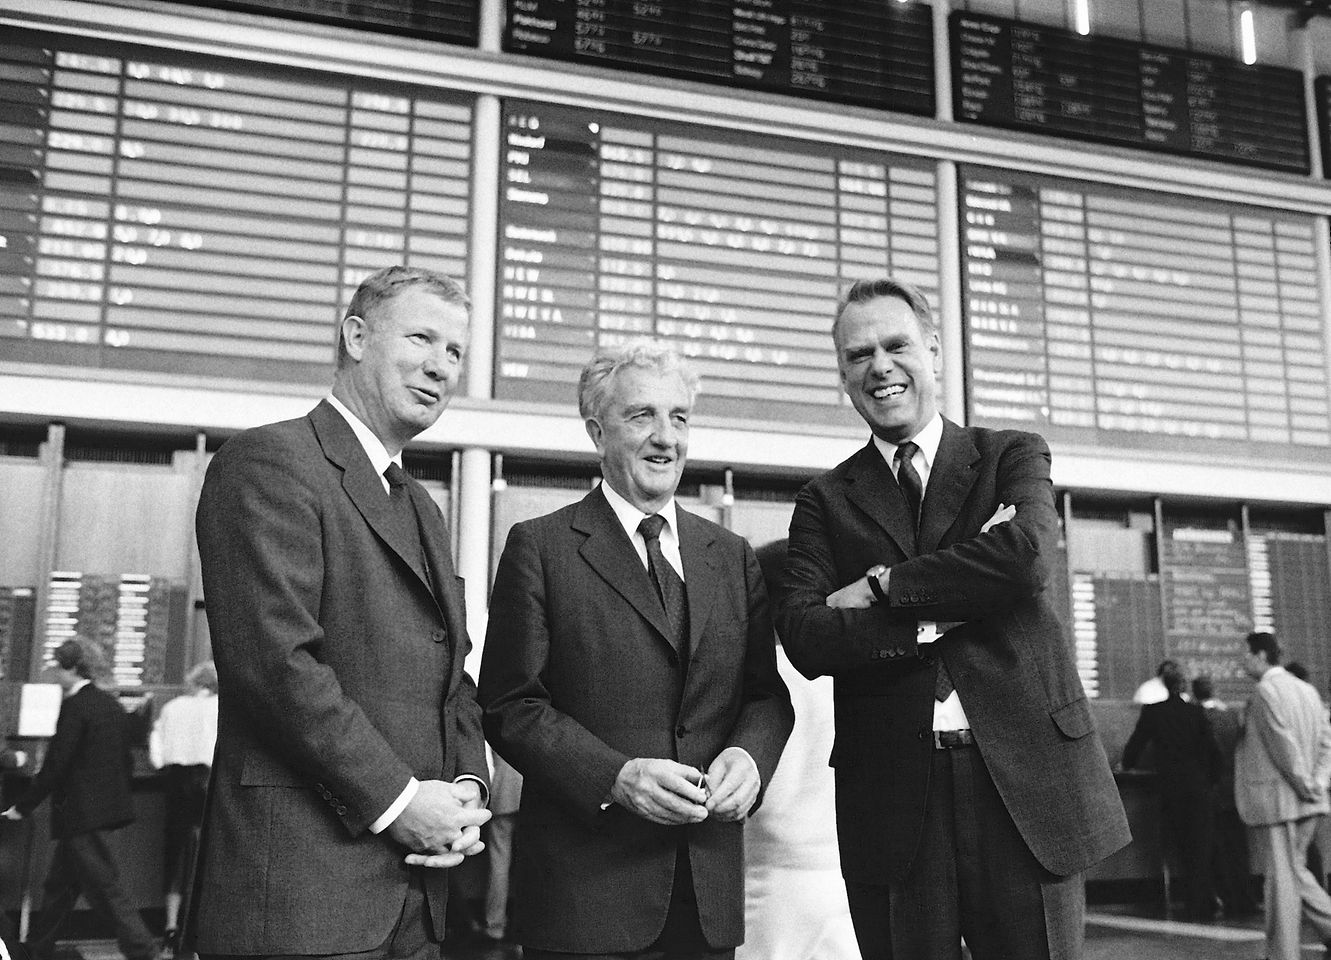 Dr. Konrad Henkel (center) with his nephews Dr. Jürgen Manchot (left) and Dipl.-Ing. Albrecht Woeste